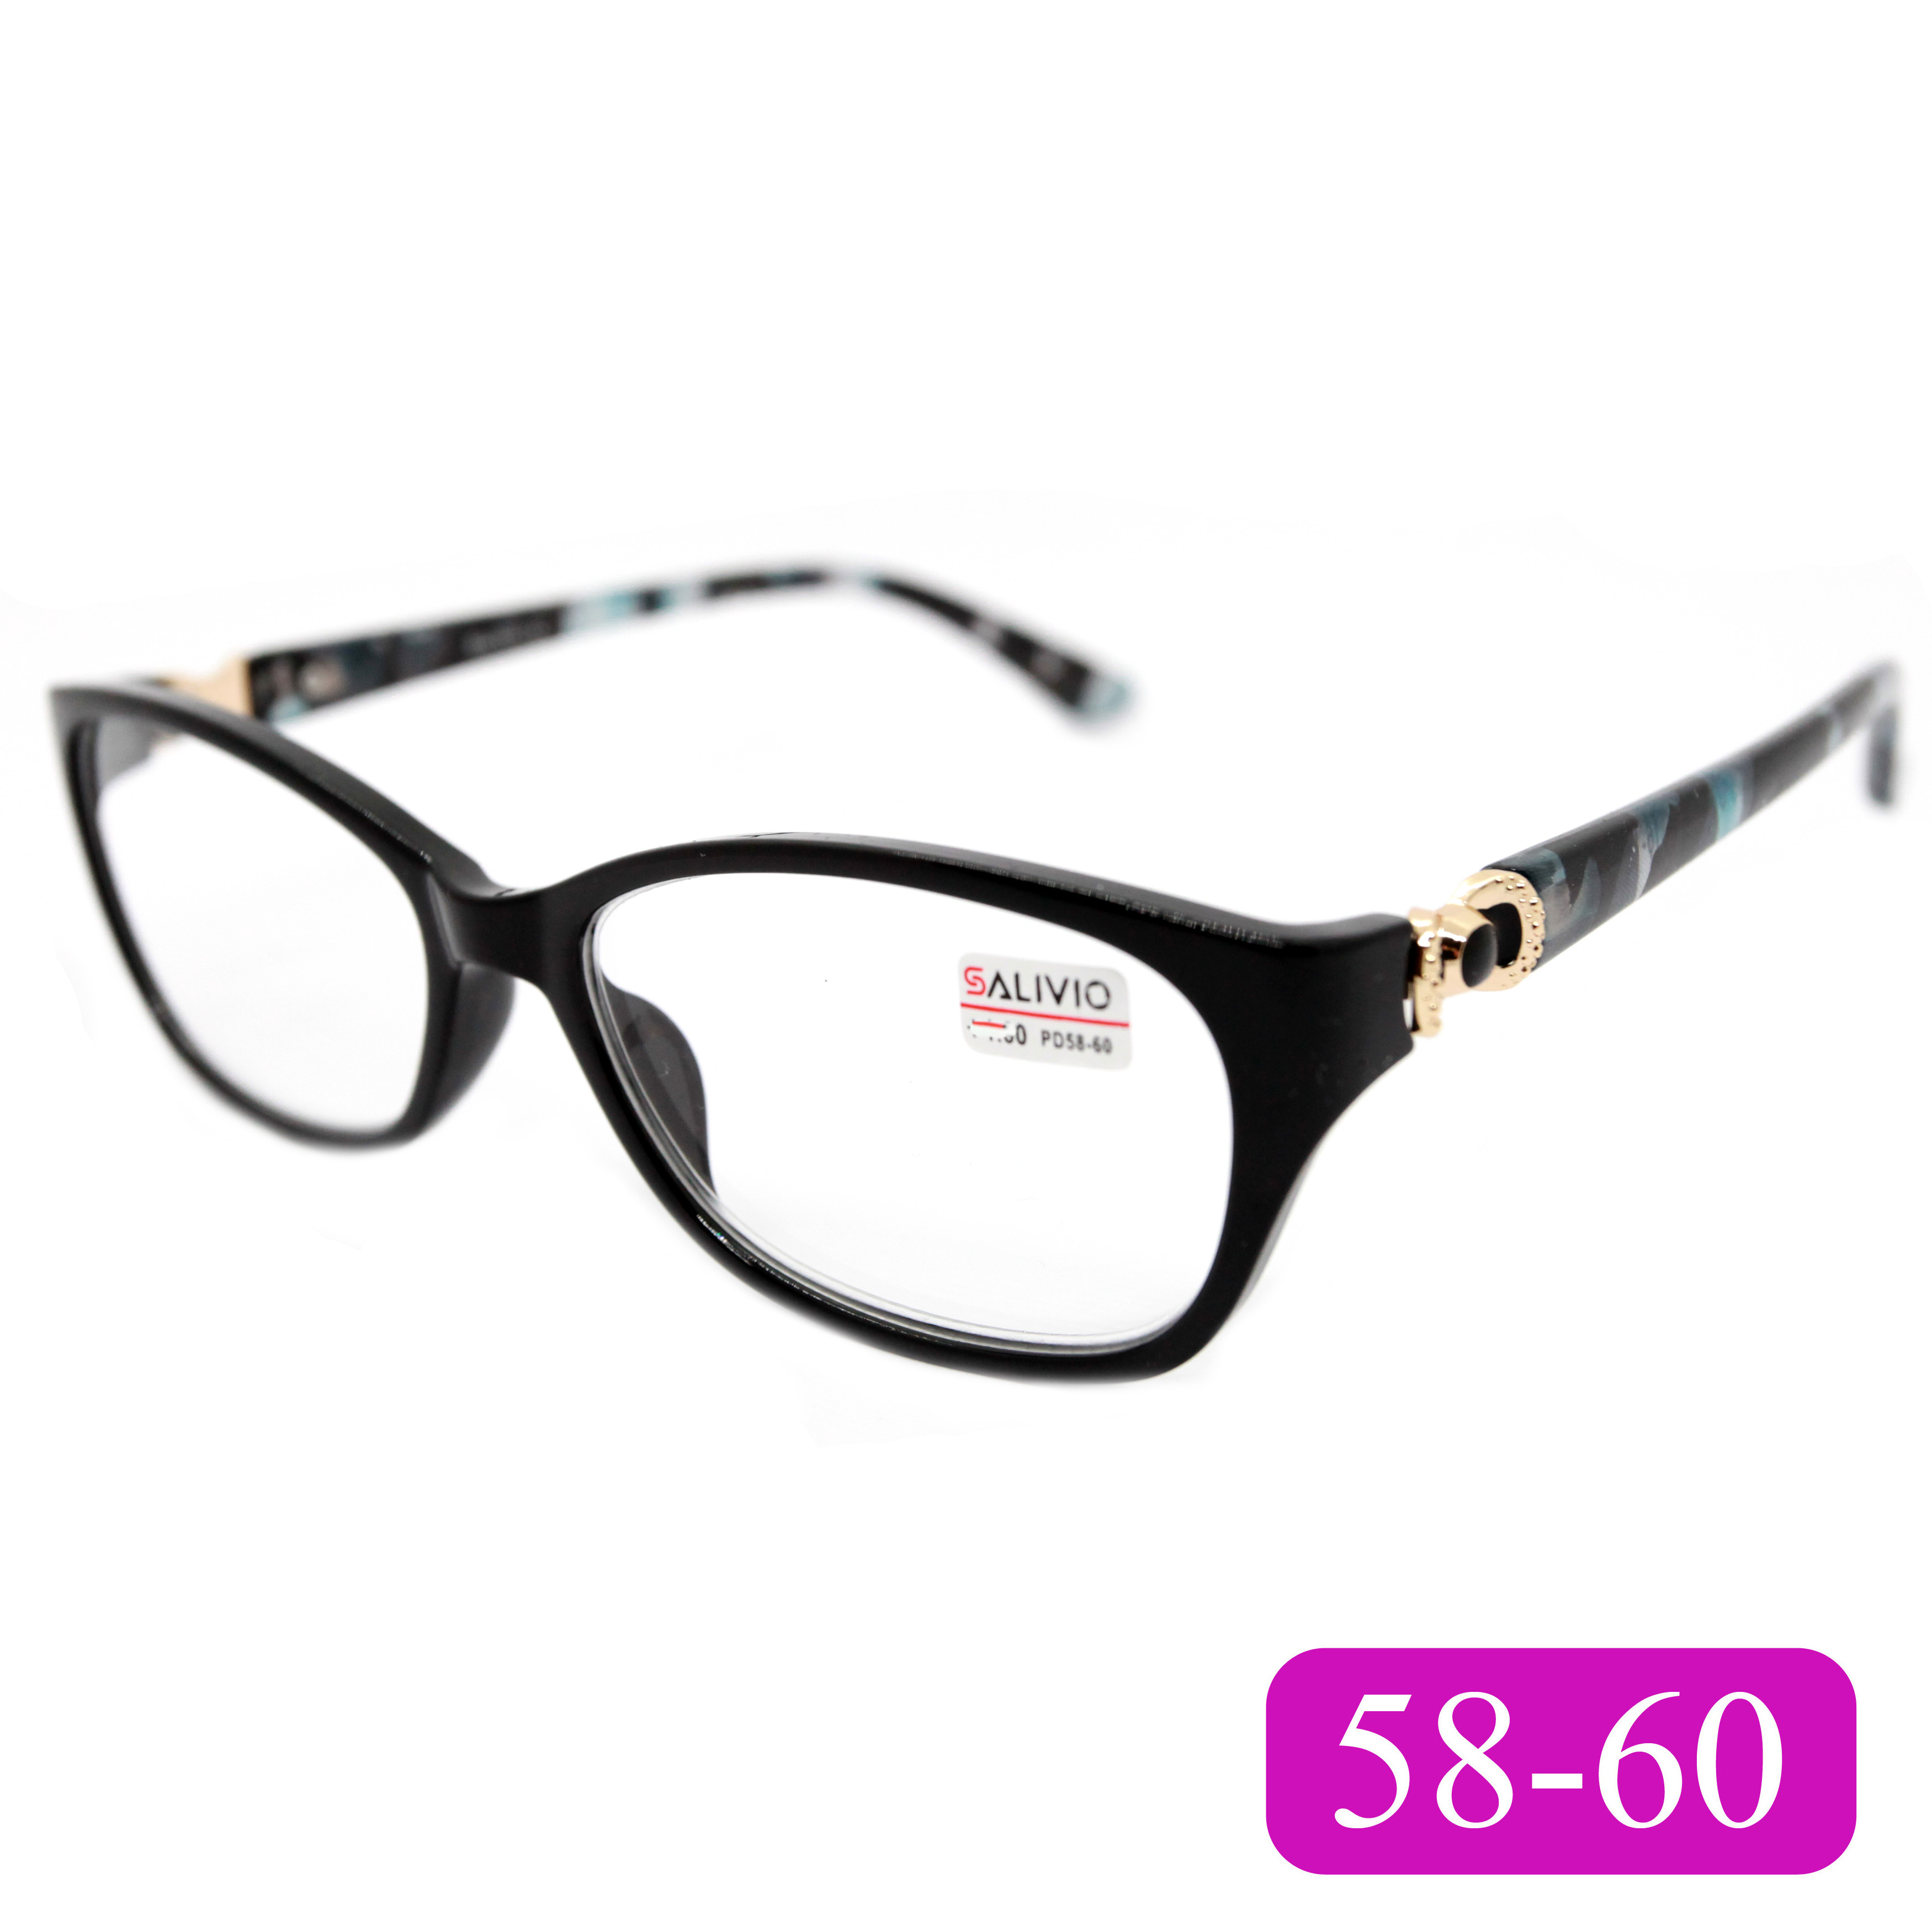 Готовые очки для чтения Salivio 0045 +2,75, без футляра, цвет черный, РЦ 58-60